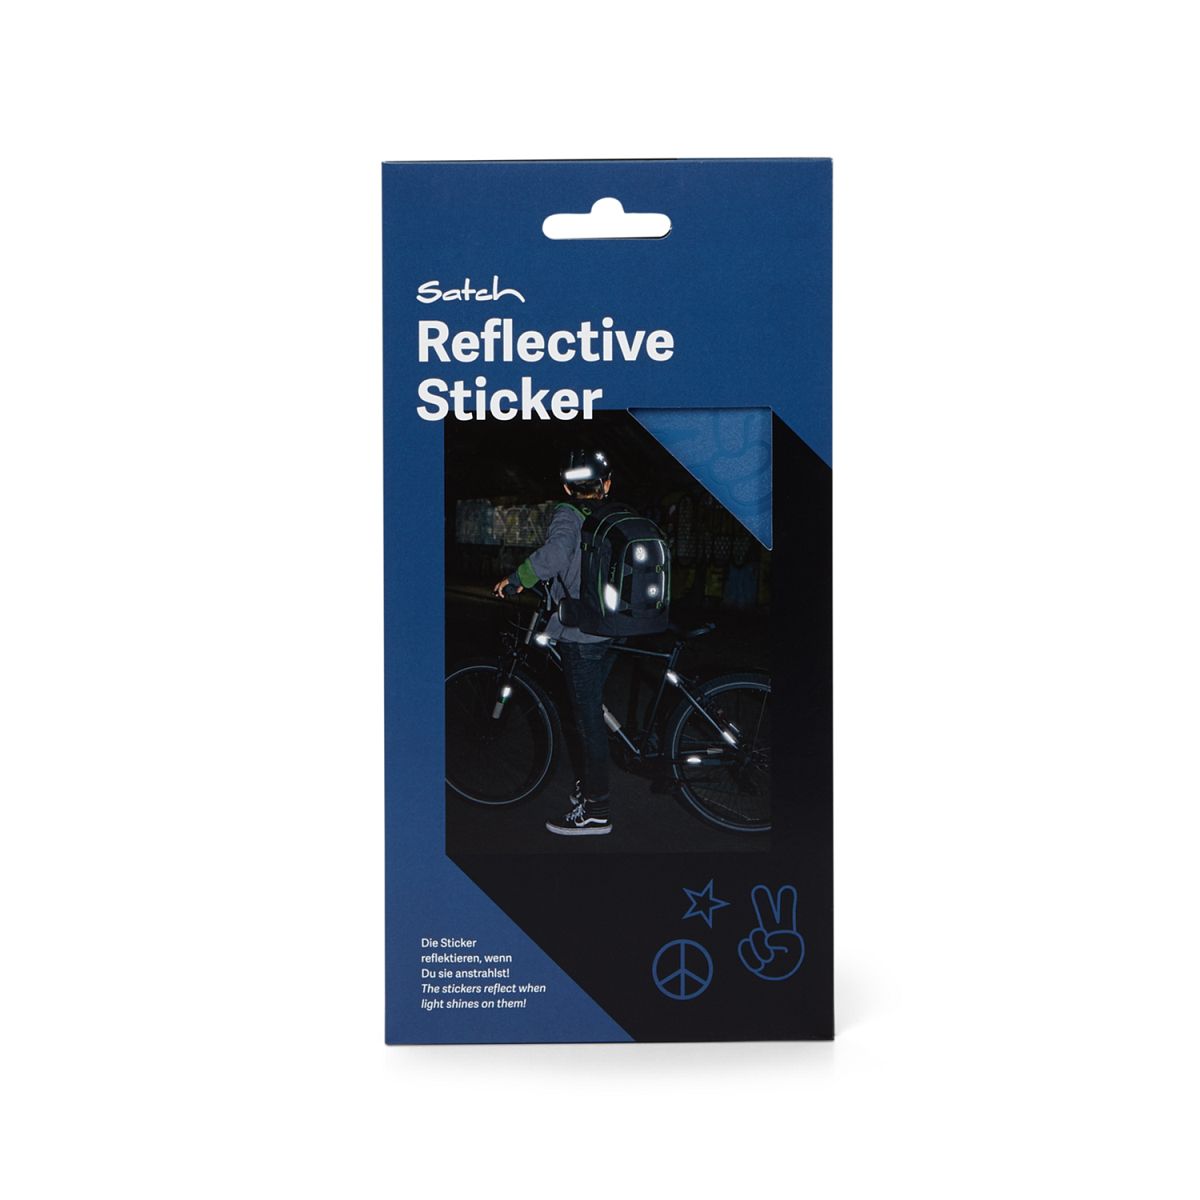 Reflective Sticker blau SAT-RST-001-313